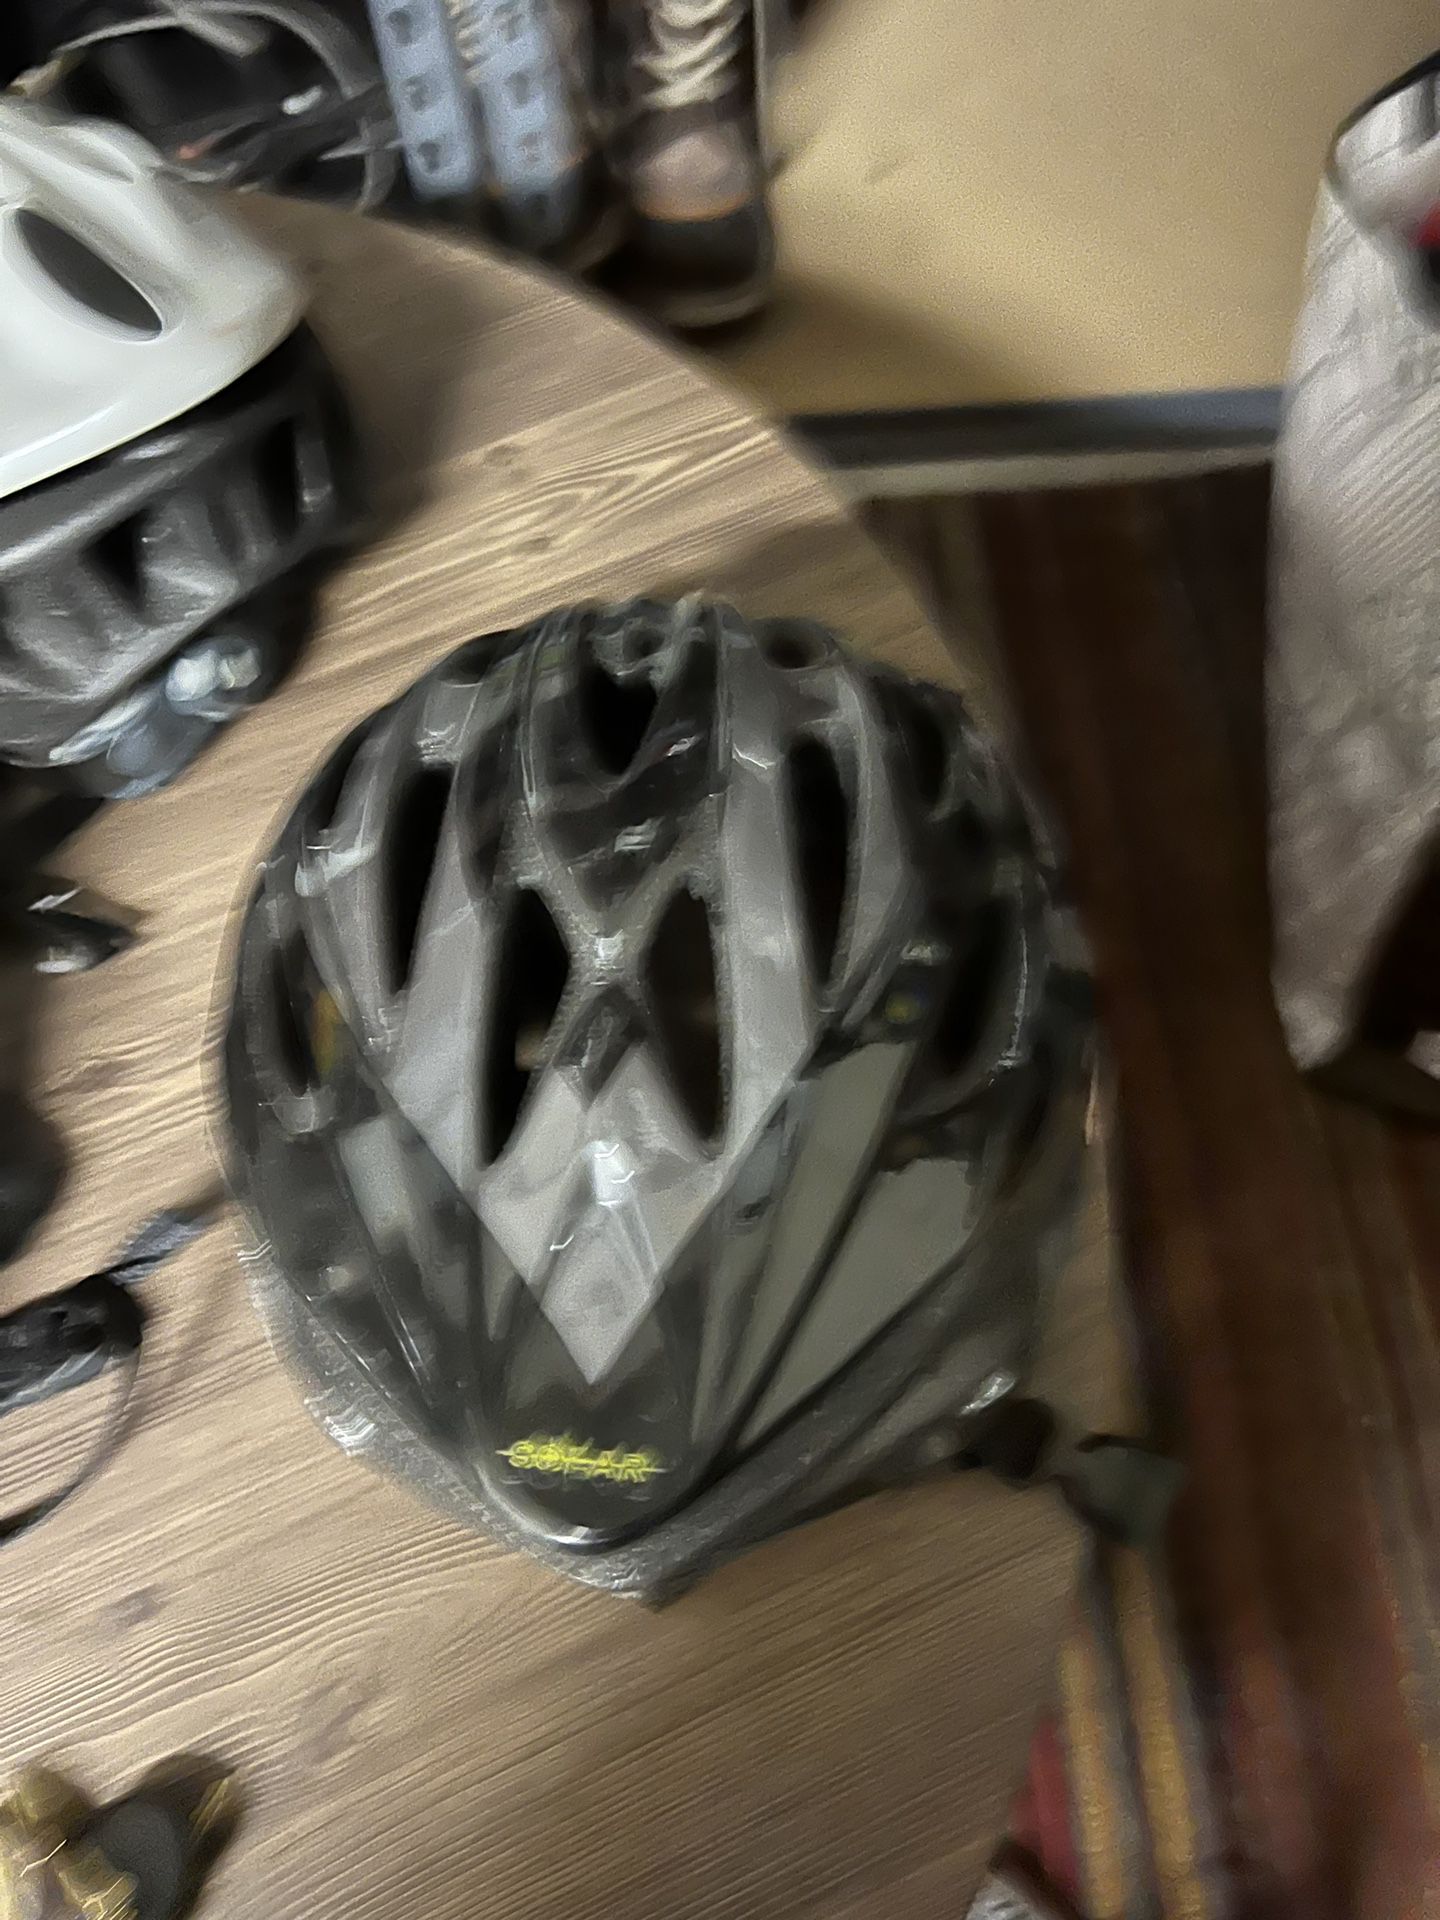 Adult Large Bike Helmet 